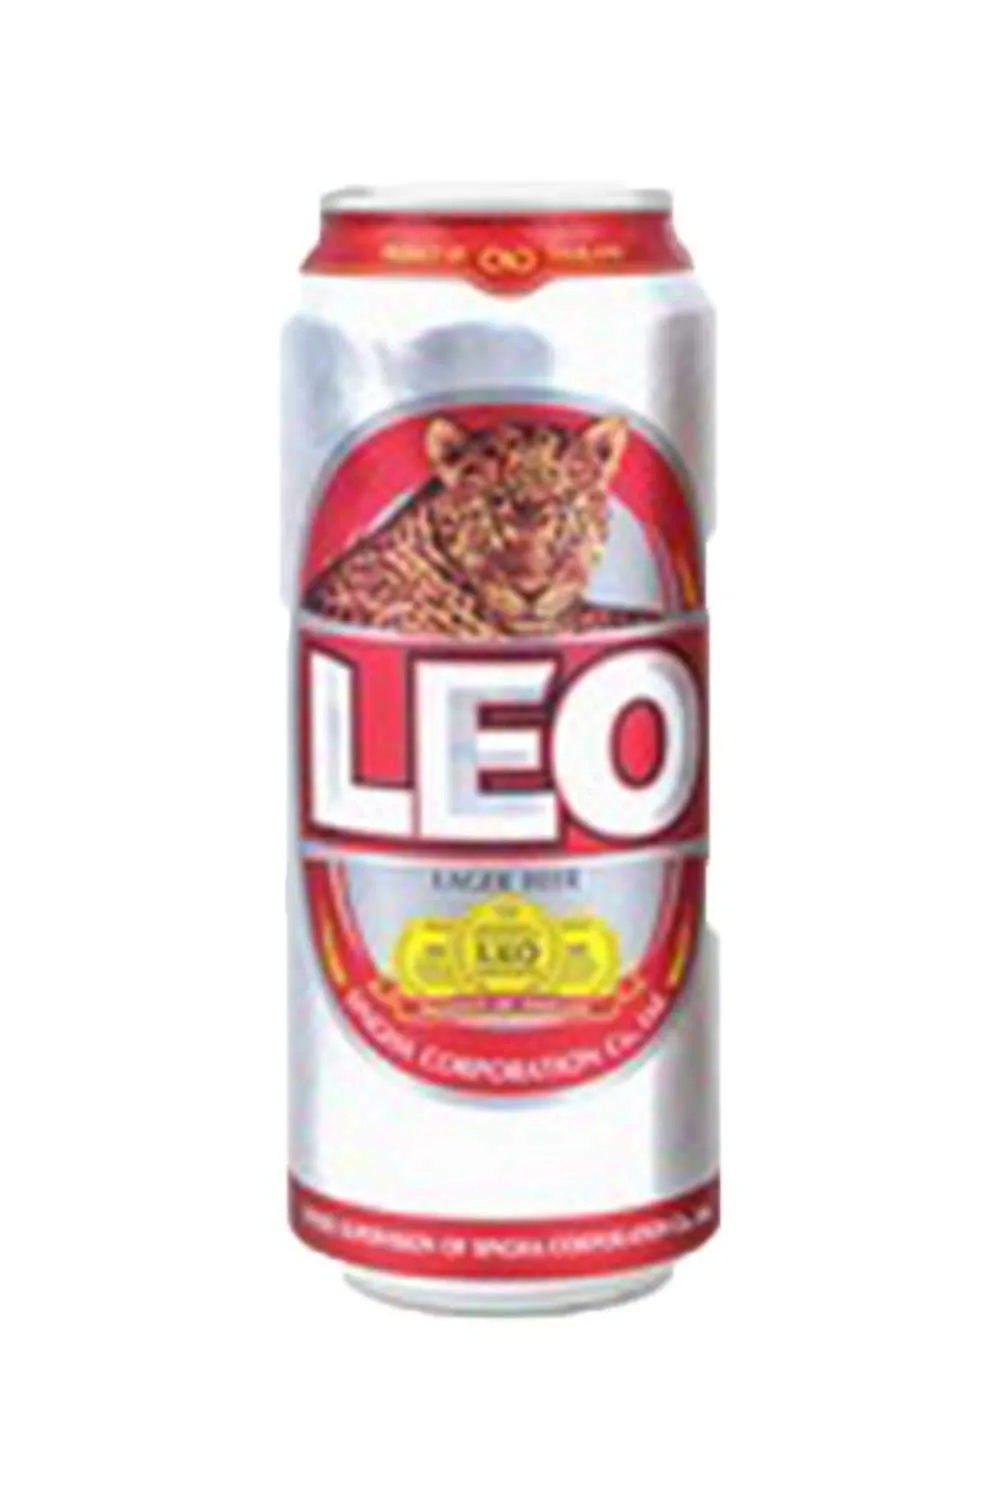 Бан 12. Пиво Лео (Leo) светлый лагер (5,0%) 0,49лх12 бан. Пиво Лео Тайланд. Пиво в жб 0.5. Leon пиво Тайланд.